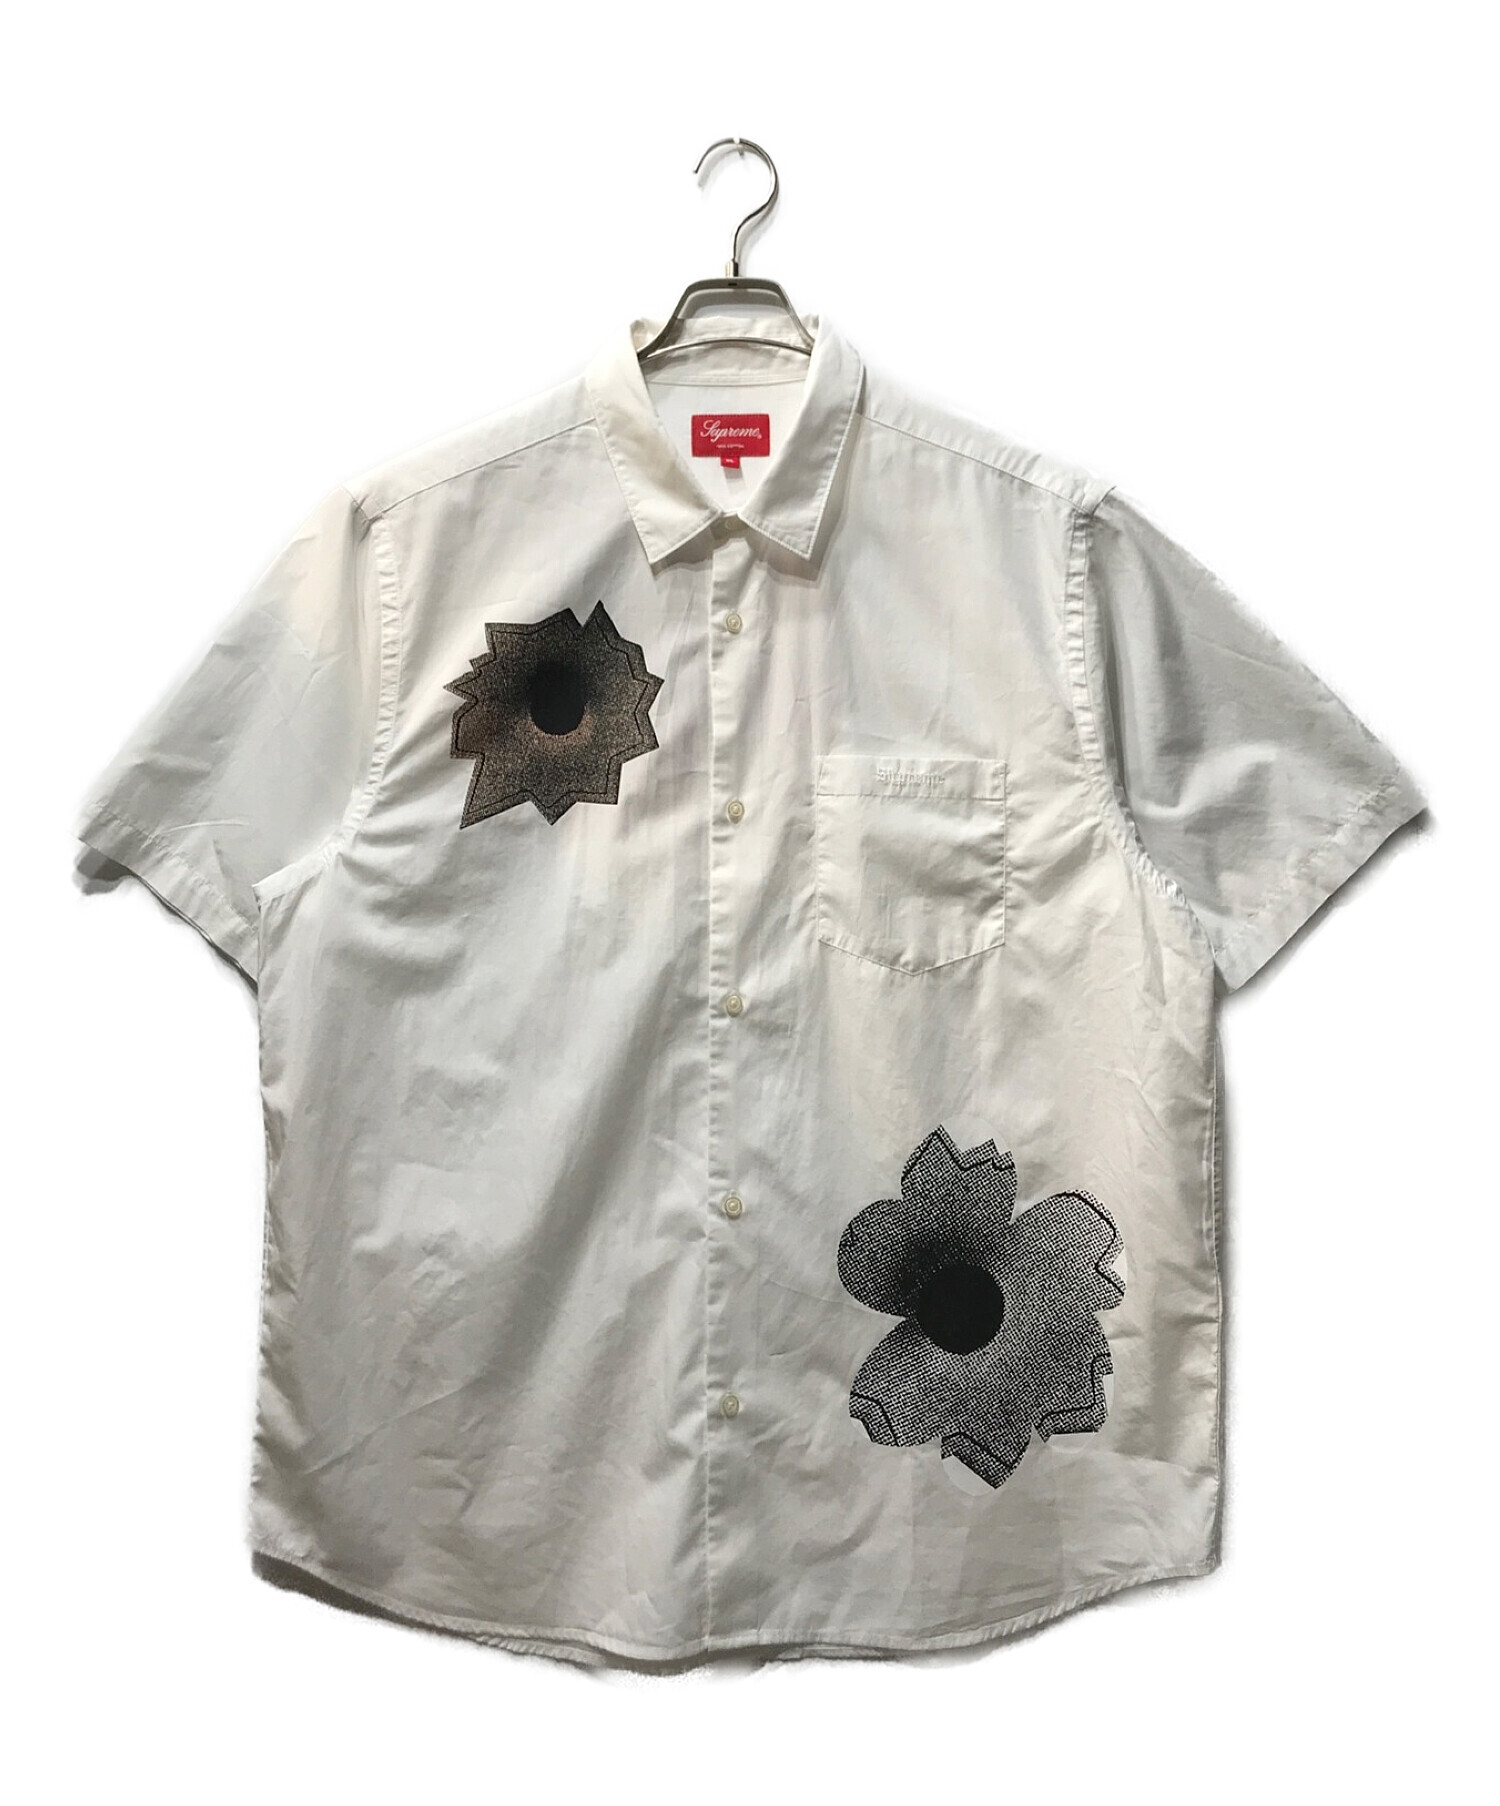 中古・古着通販】SUPREME (シュプリーム) 22SS Nate Lowman S/S Shirt